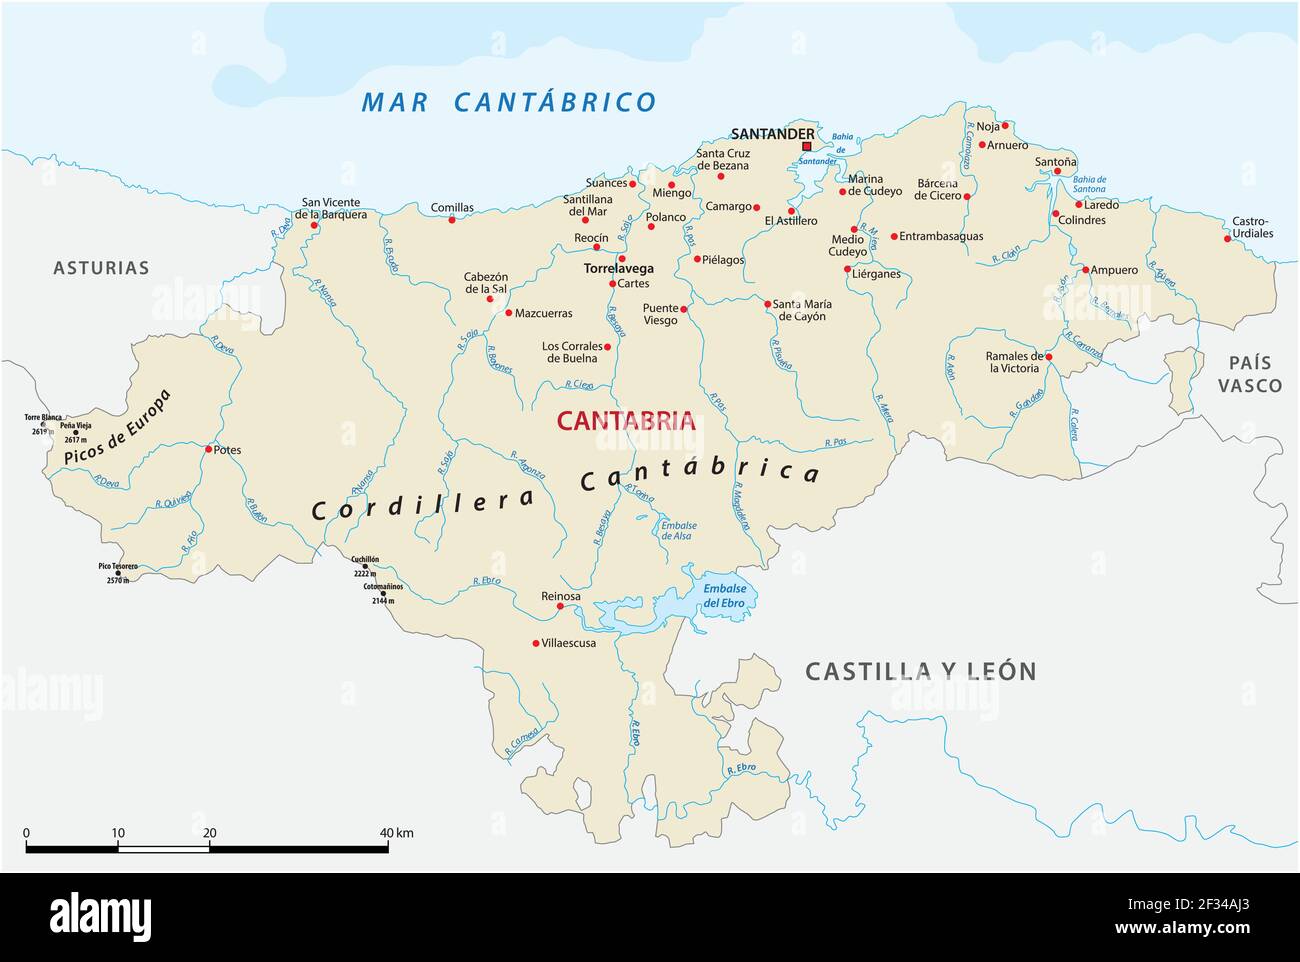 Mappa vettoriale delle comunità autonome spagnole della Cantabria Illustrazione Vettoriale